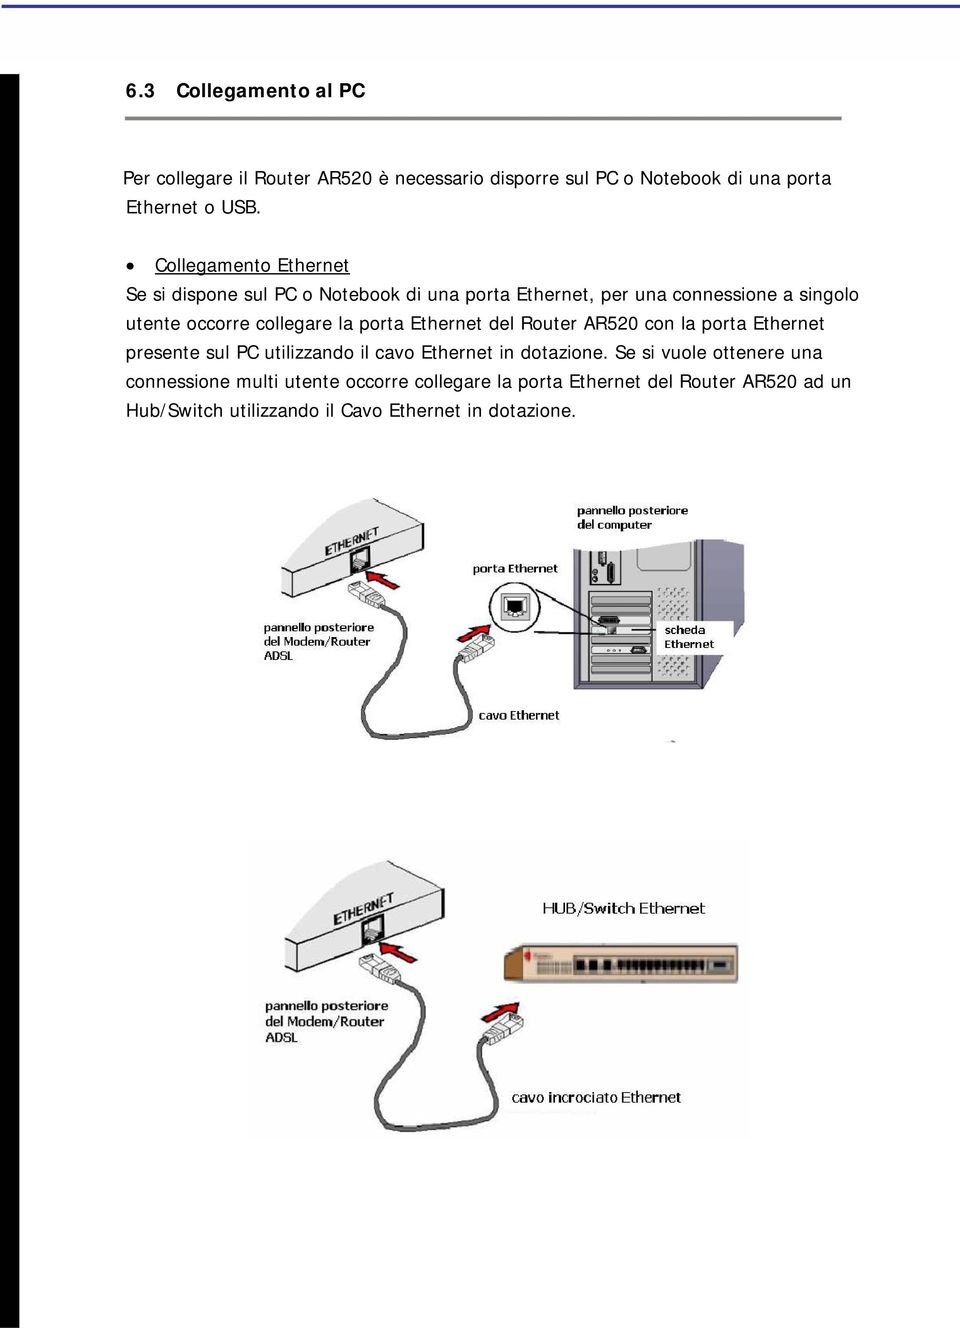 la porta Ethernet del Router AR520 con la porta Ethernet presente sul PC utilizzando il cavo Ethernet in dotazione.